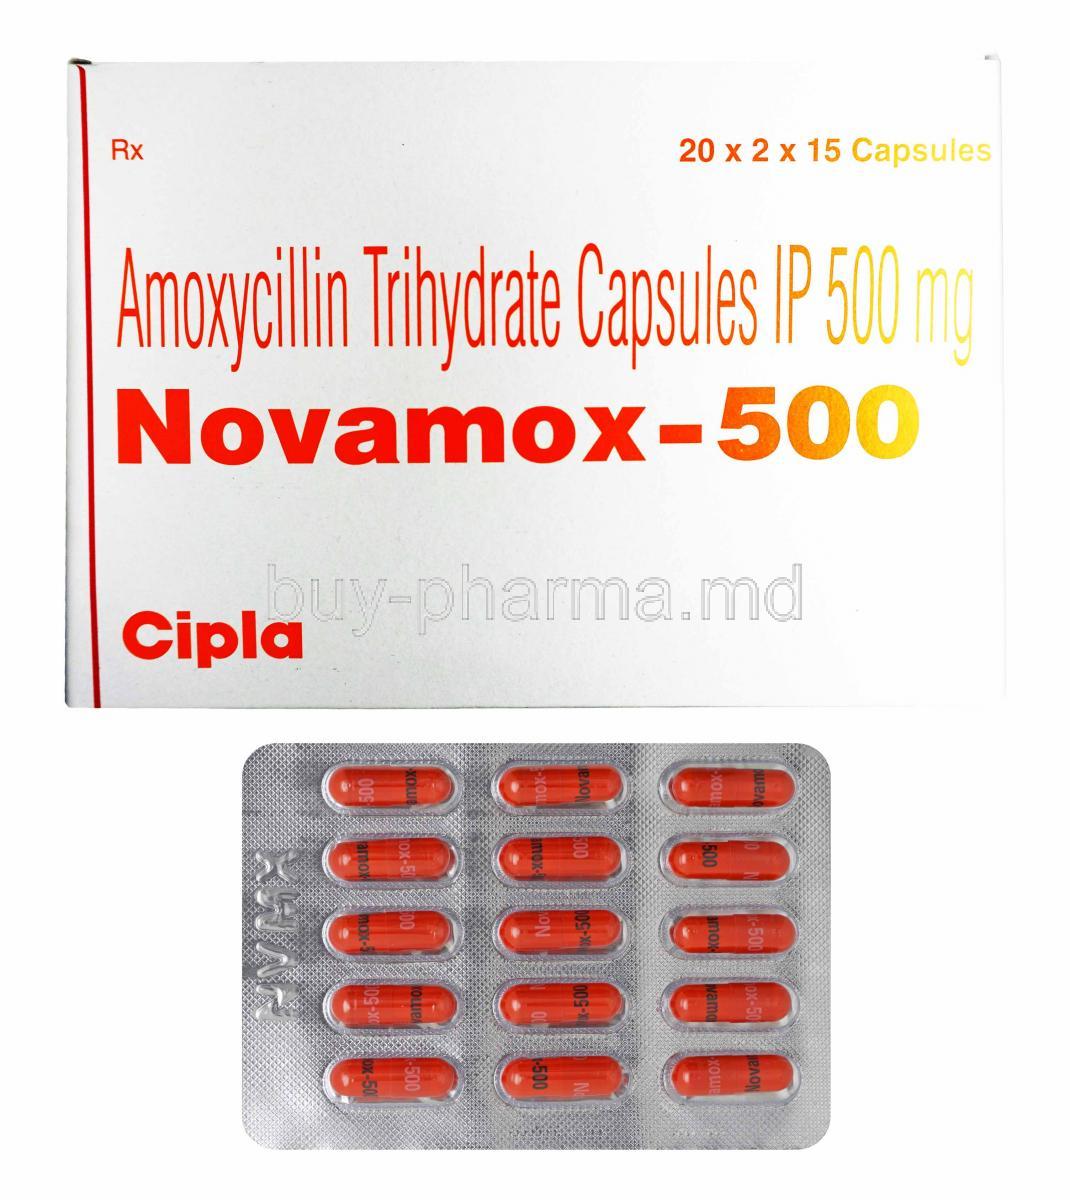 Novamox, Amoxycillin 500mg box and capsules